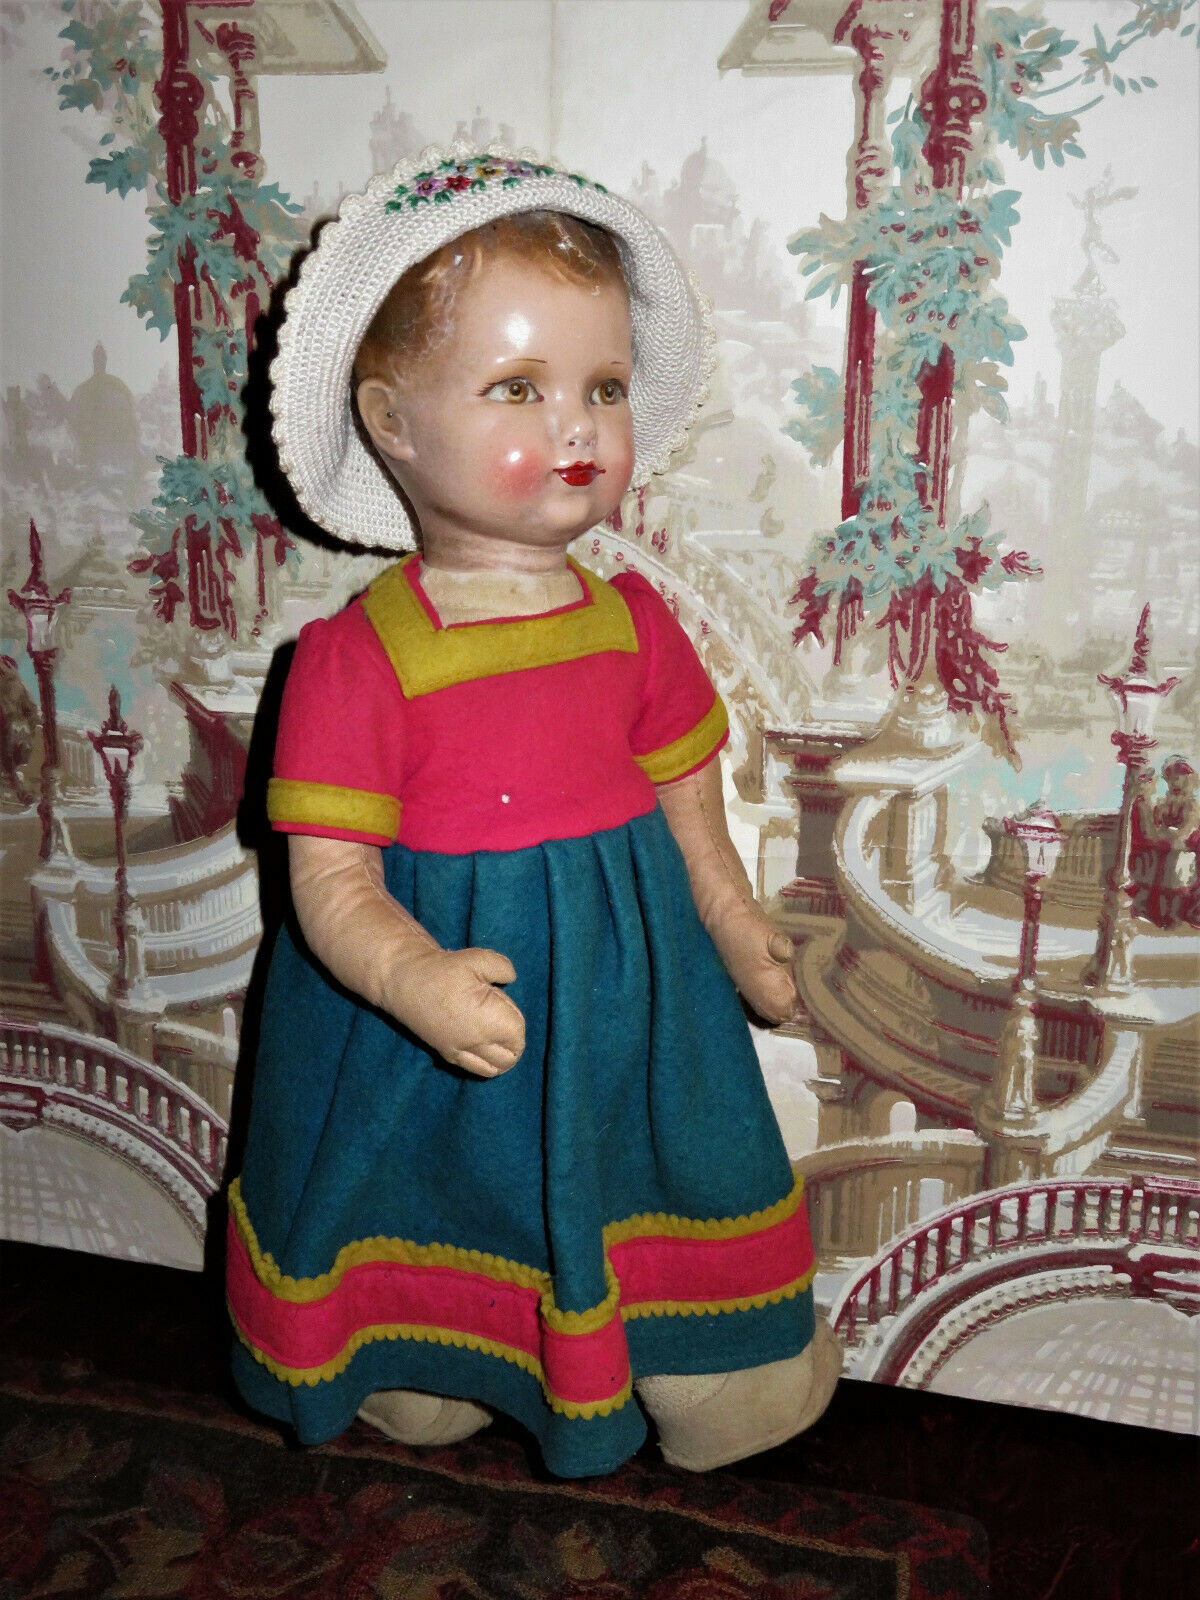 Adorable 17" Vintage Factory Original English Dean's Rag Book Dutch Girl Doll!